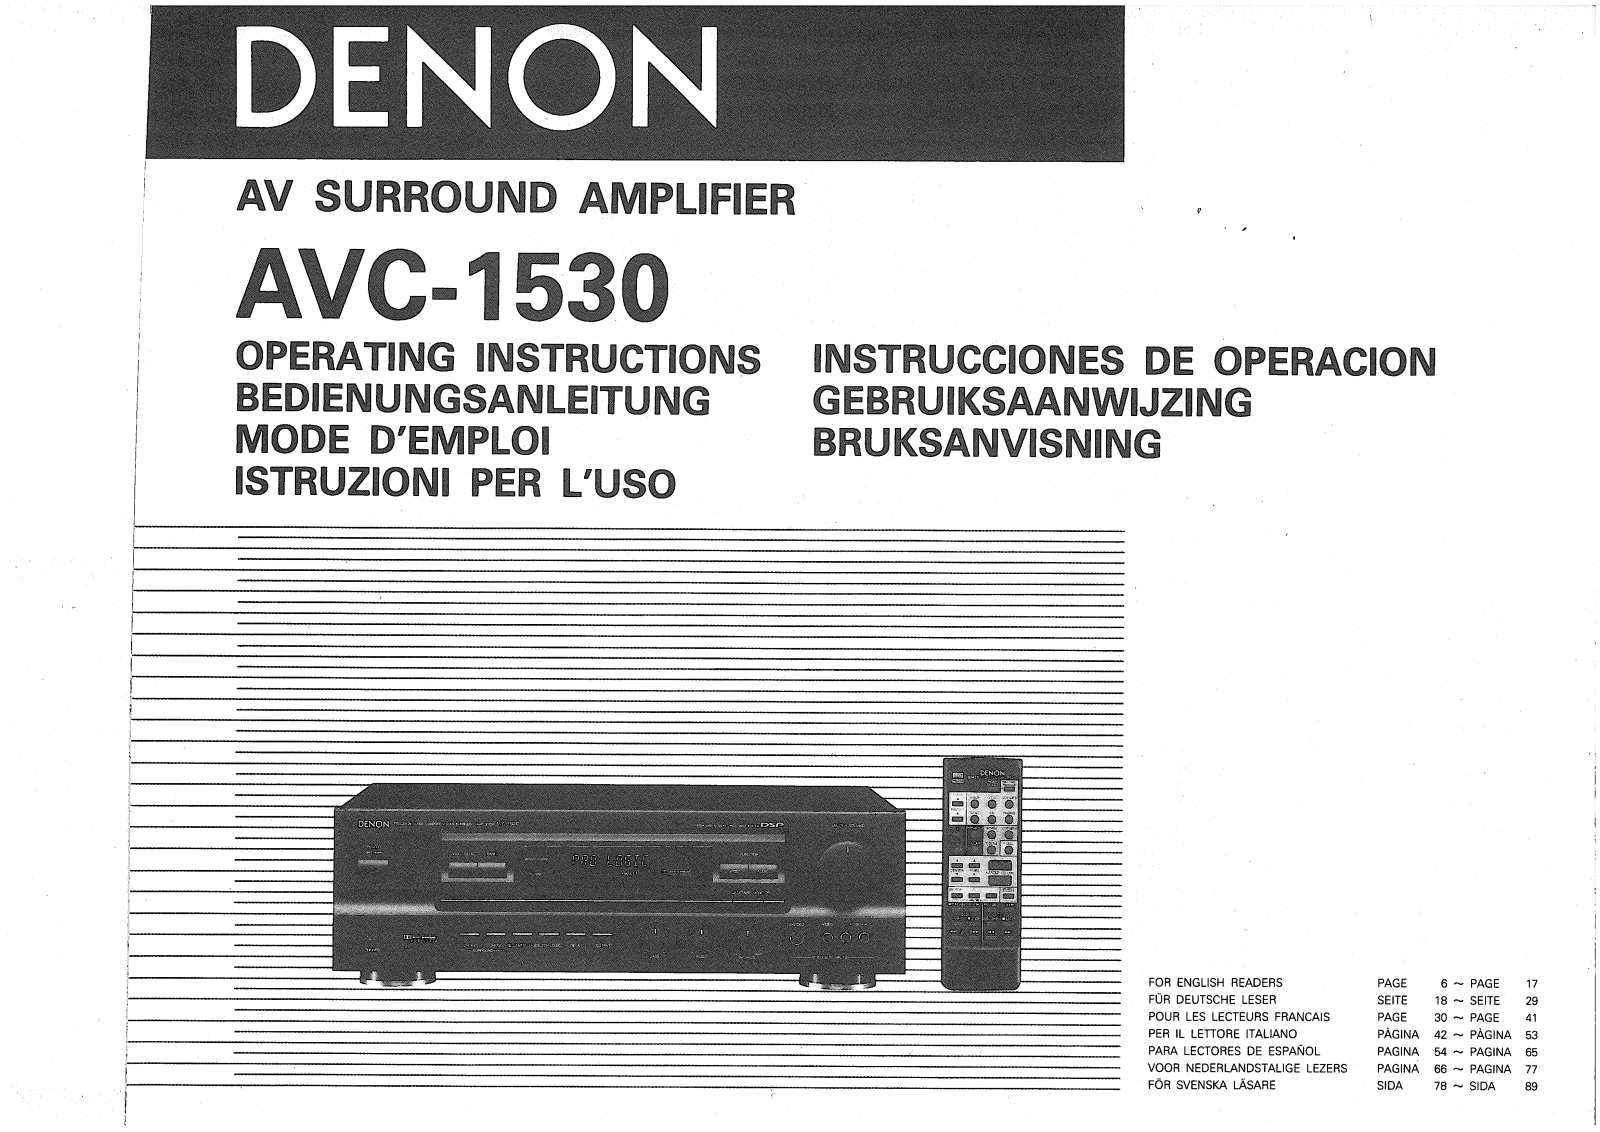 Denon AVC-1530 Owner's Manual